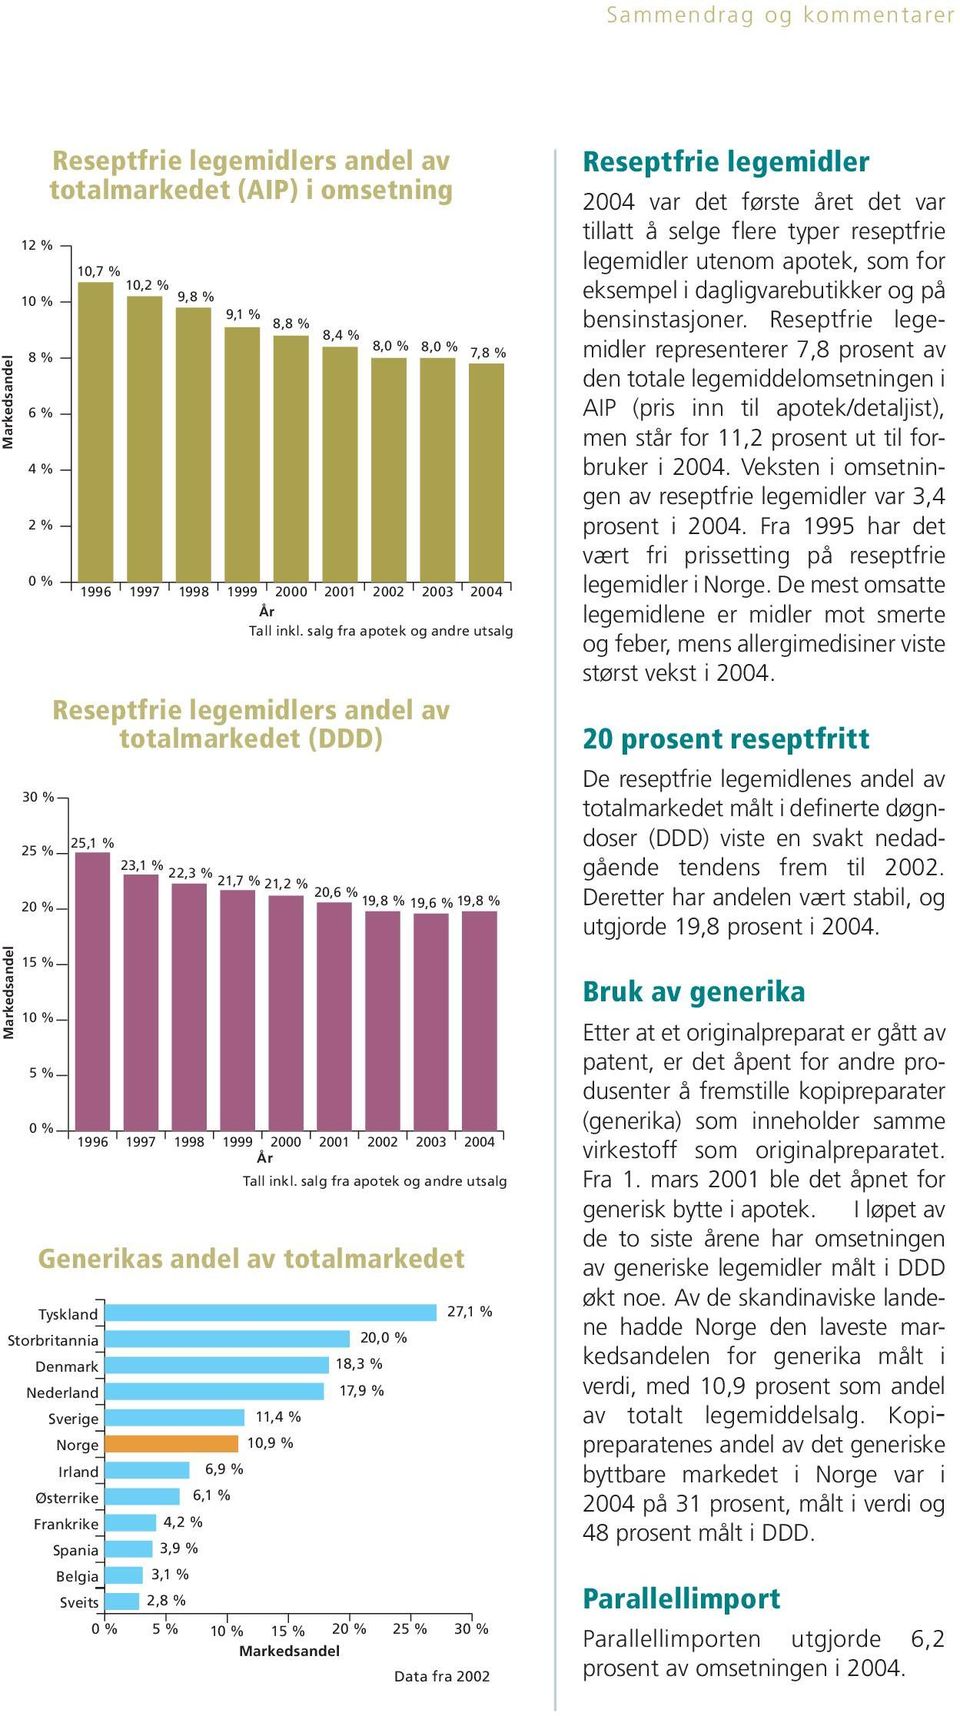 salg fra apotek og andre utsalg Reseptfrie legemidlers andel av totalmarkedet (DDD) 25,1 % Tyskland Storbritannia Denmark Nederland Østerrike Frankrike 23,1 % 22,3 % 21,7 % 21,2 % 2,6 % 19,8 % 19,6 %